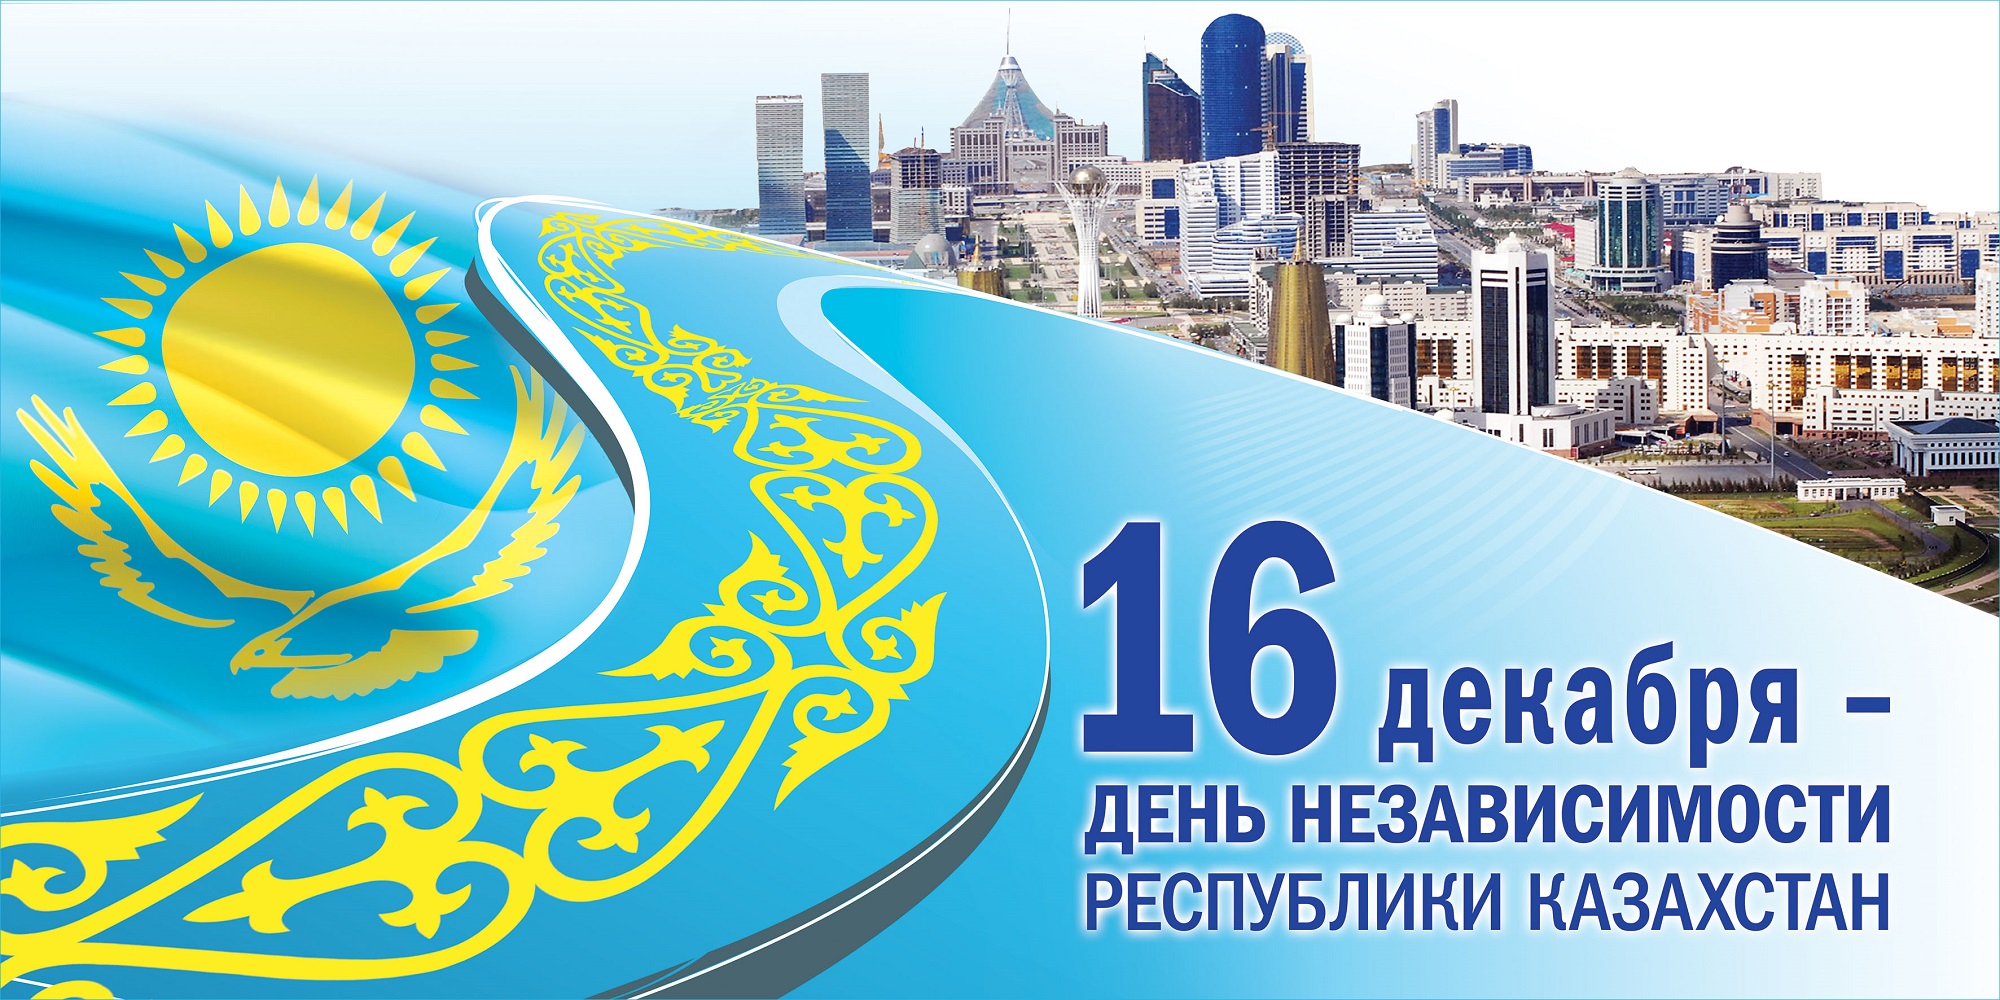 16 декабря 1991 года Верховный Совет Казахстана принял закон о независимости и государственном суверенитете Республики. 